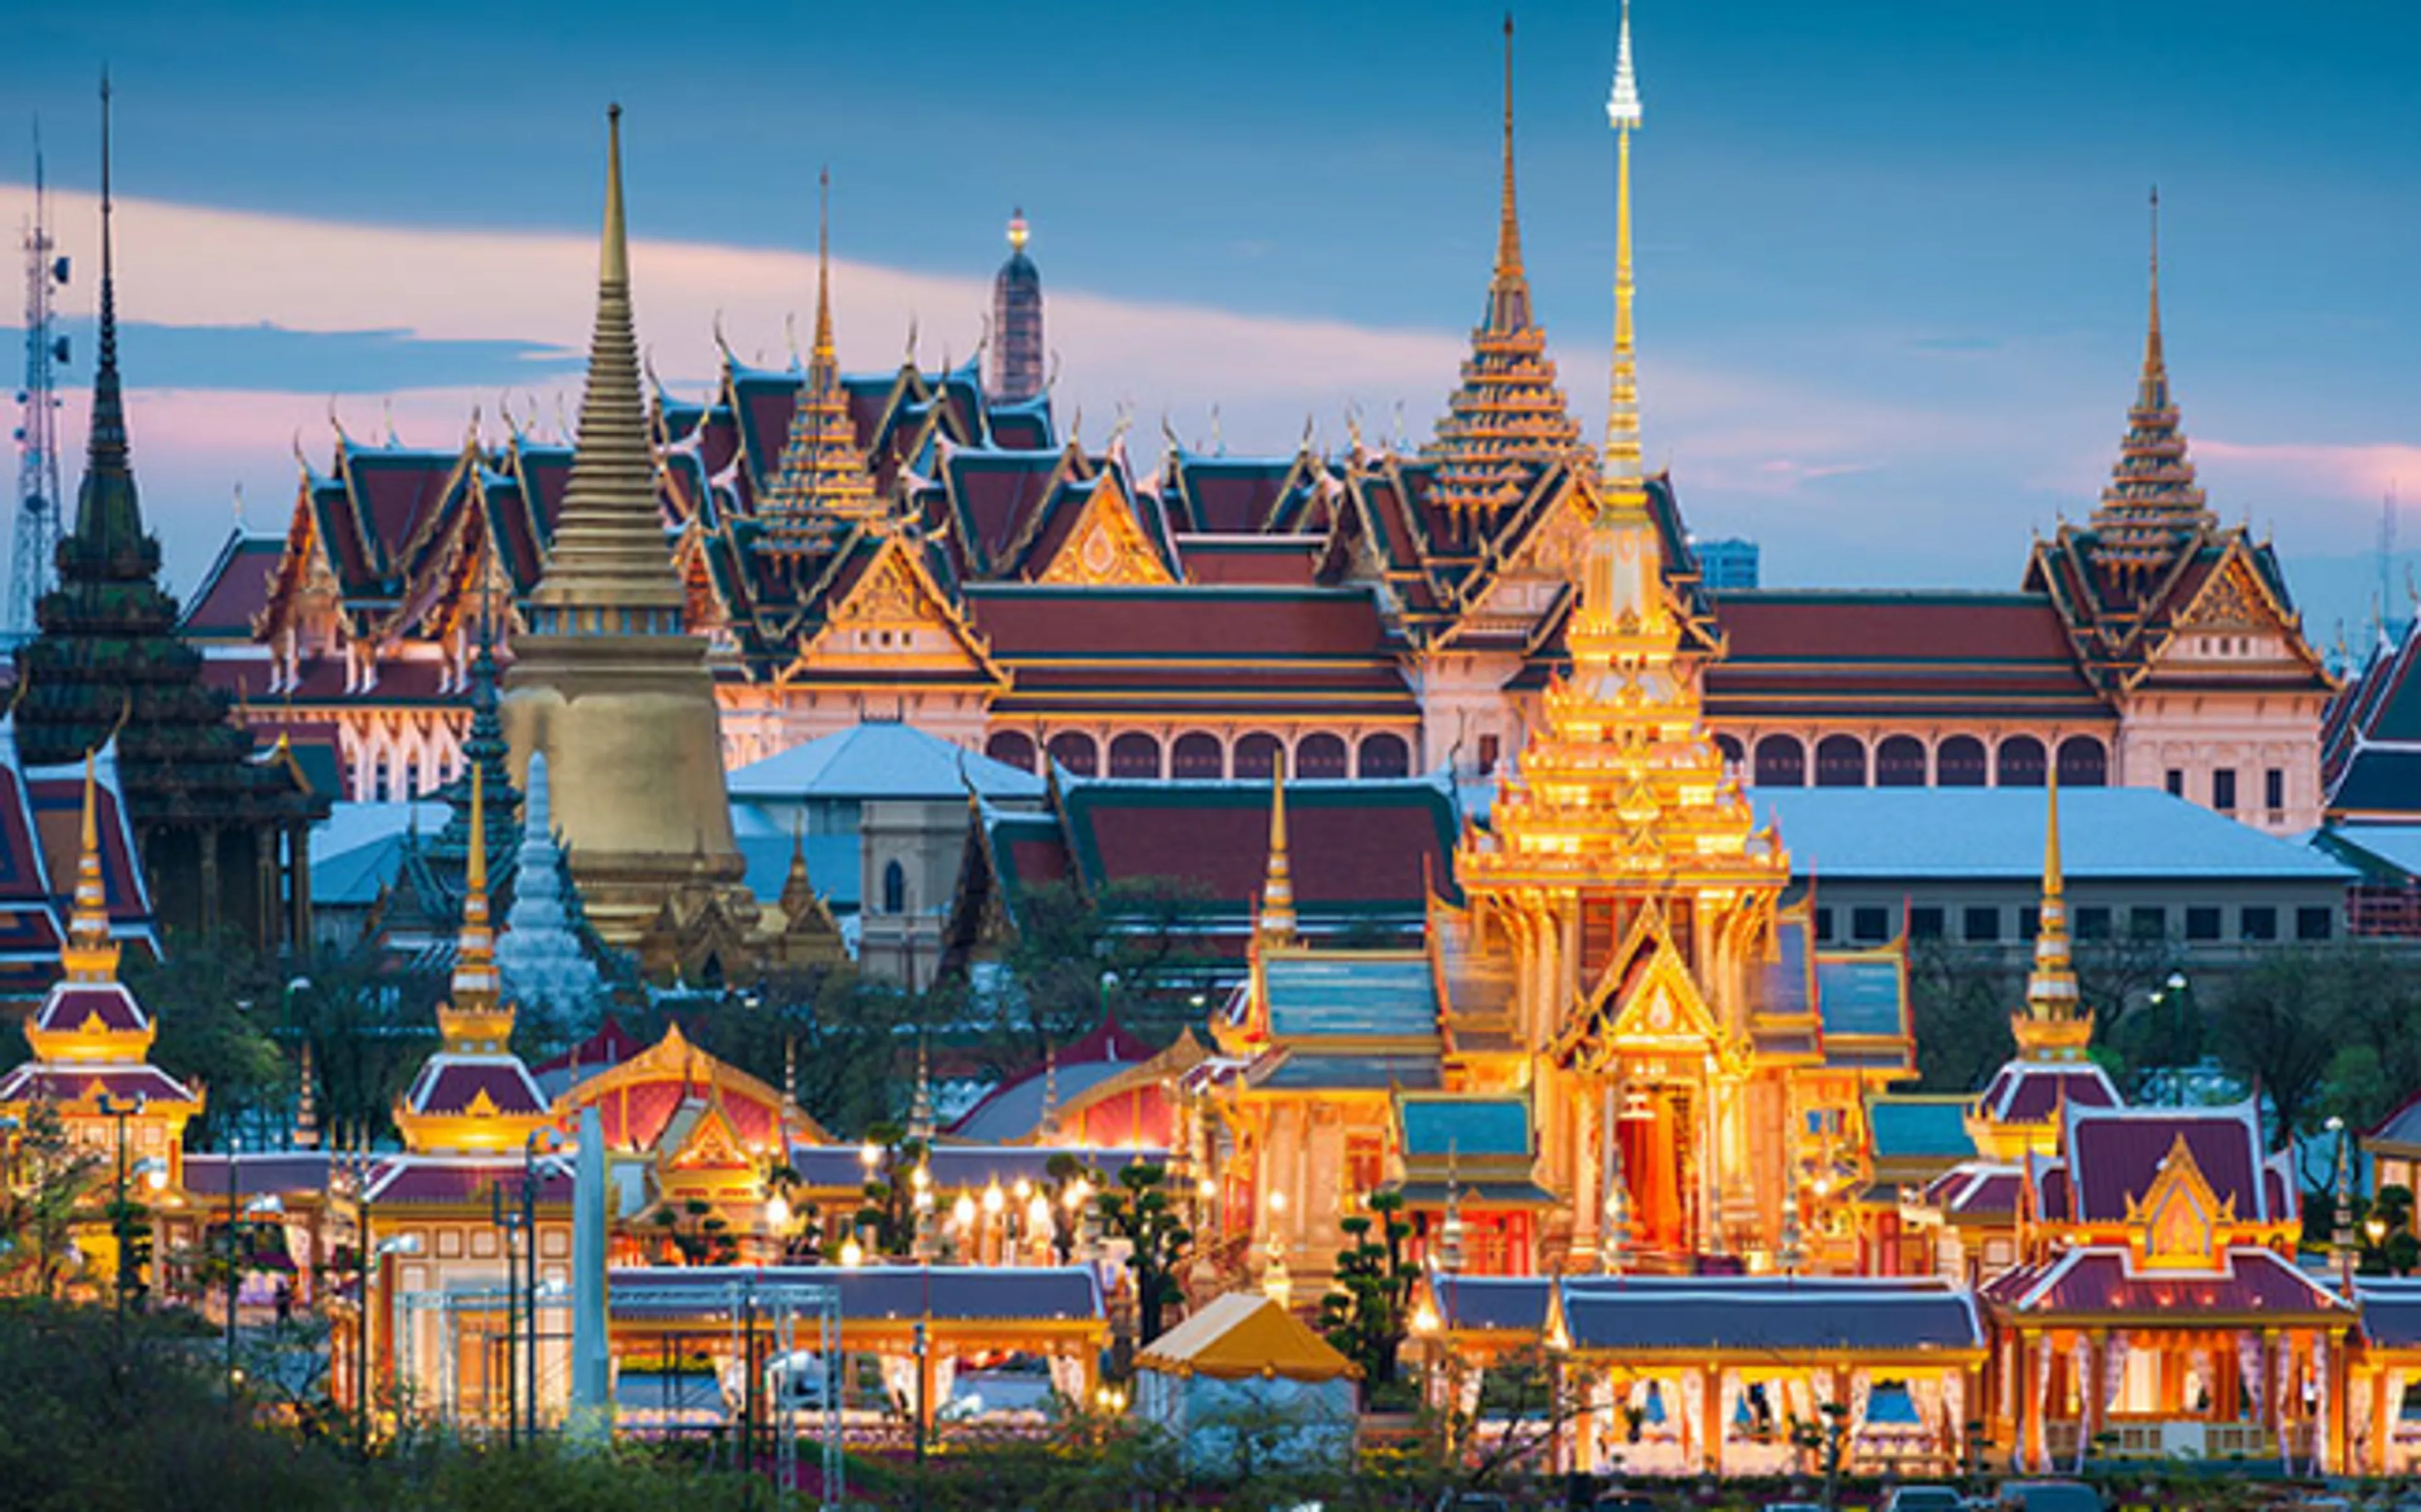 Đến thăm và trải nghiệm ngôi chùa lớn khang trang,lộng lẫy tại Thái Lan